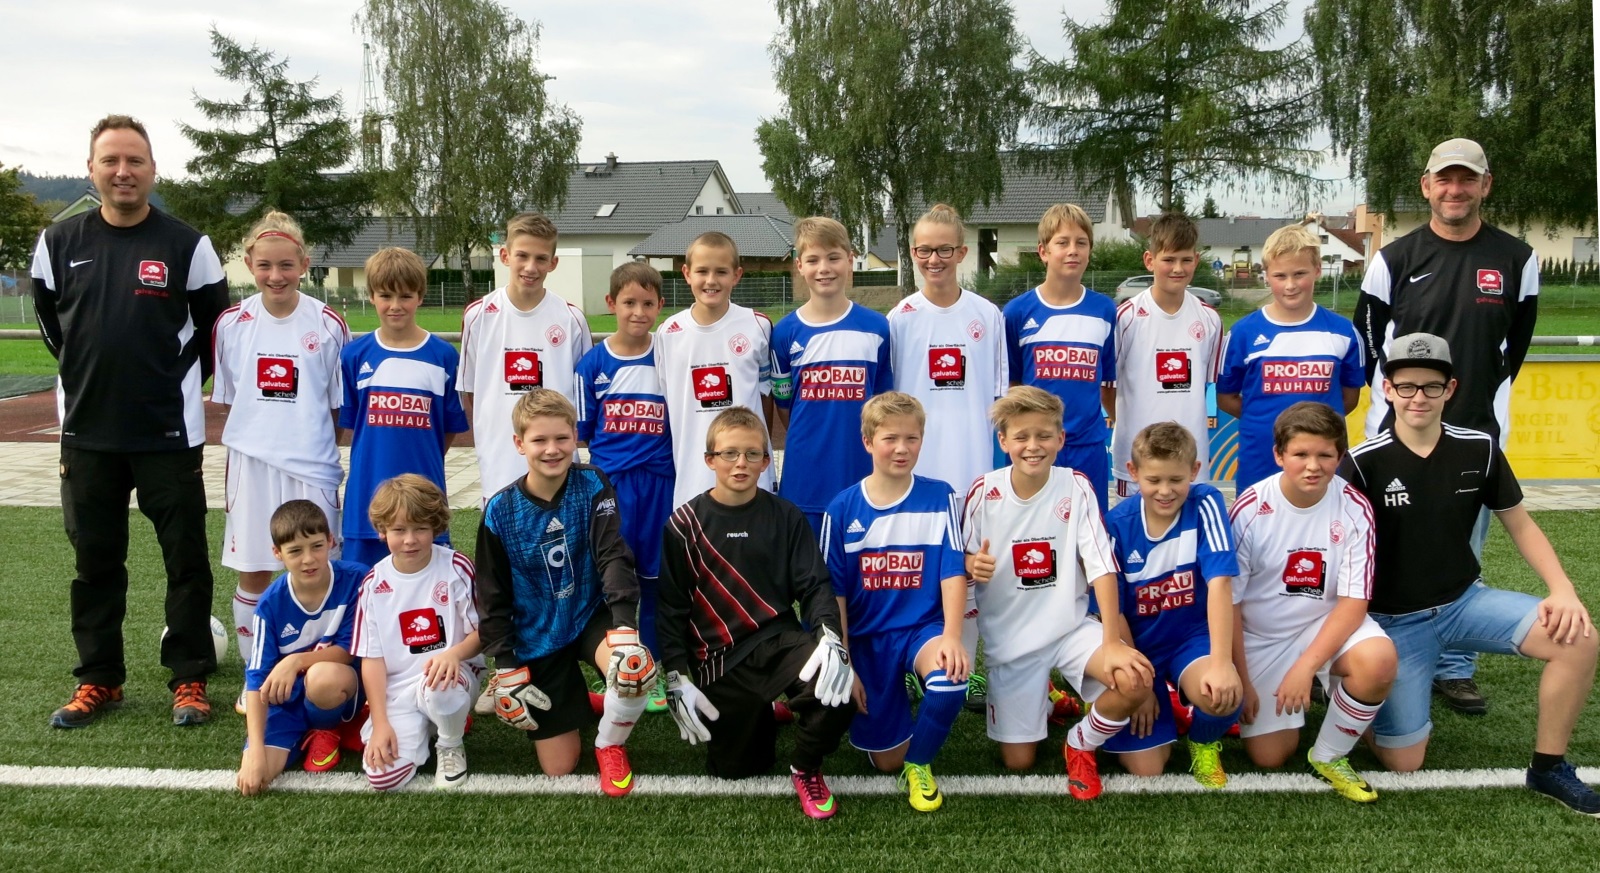 Die D-Junioren der SGM Lauterbach / Hardt Saison 2014/2015